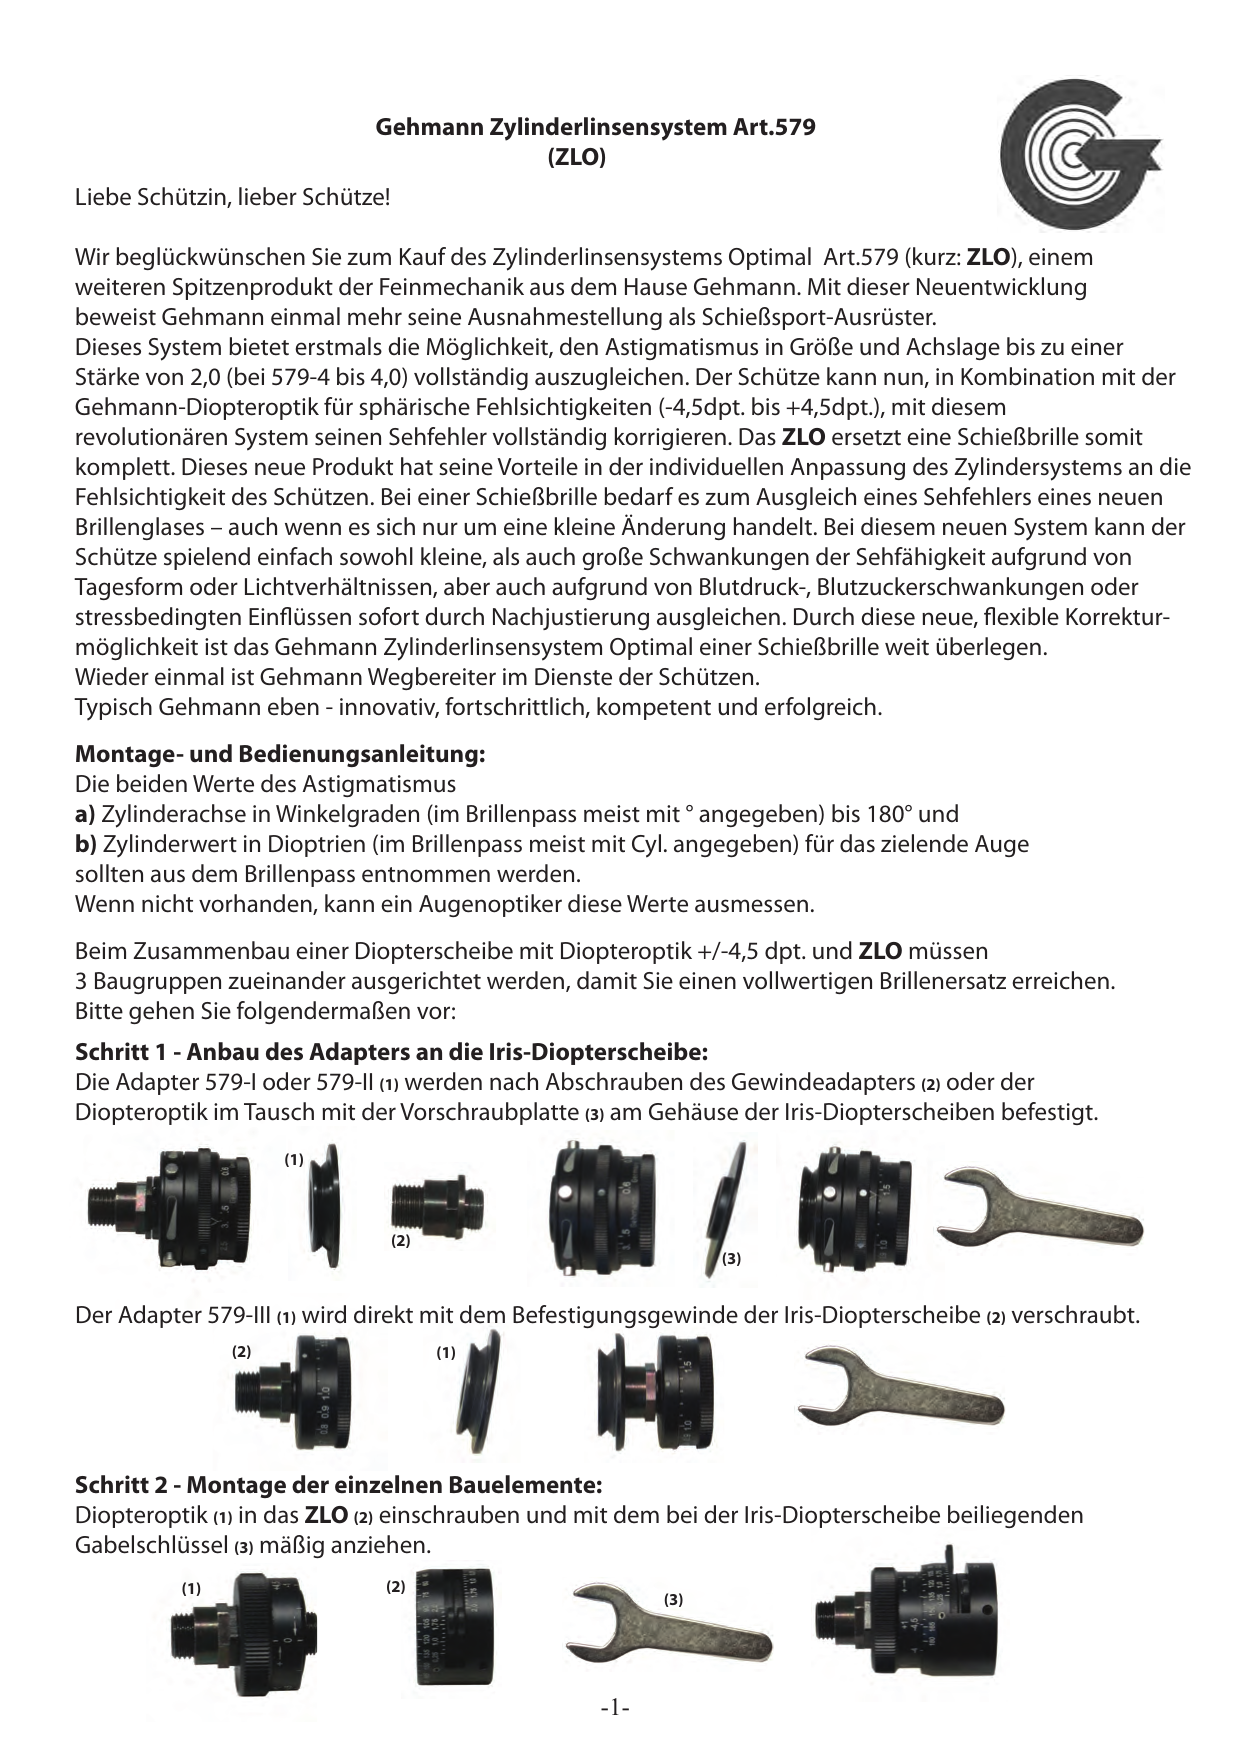 575 Gehmann Kombinationsfilter mit Diopter-Optik